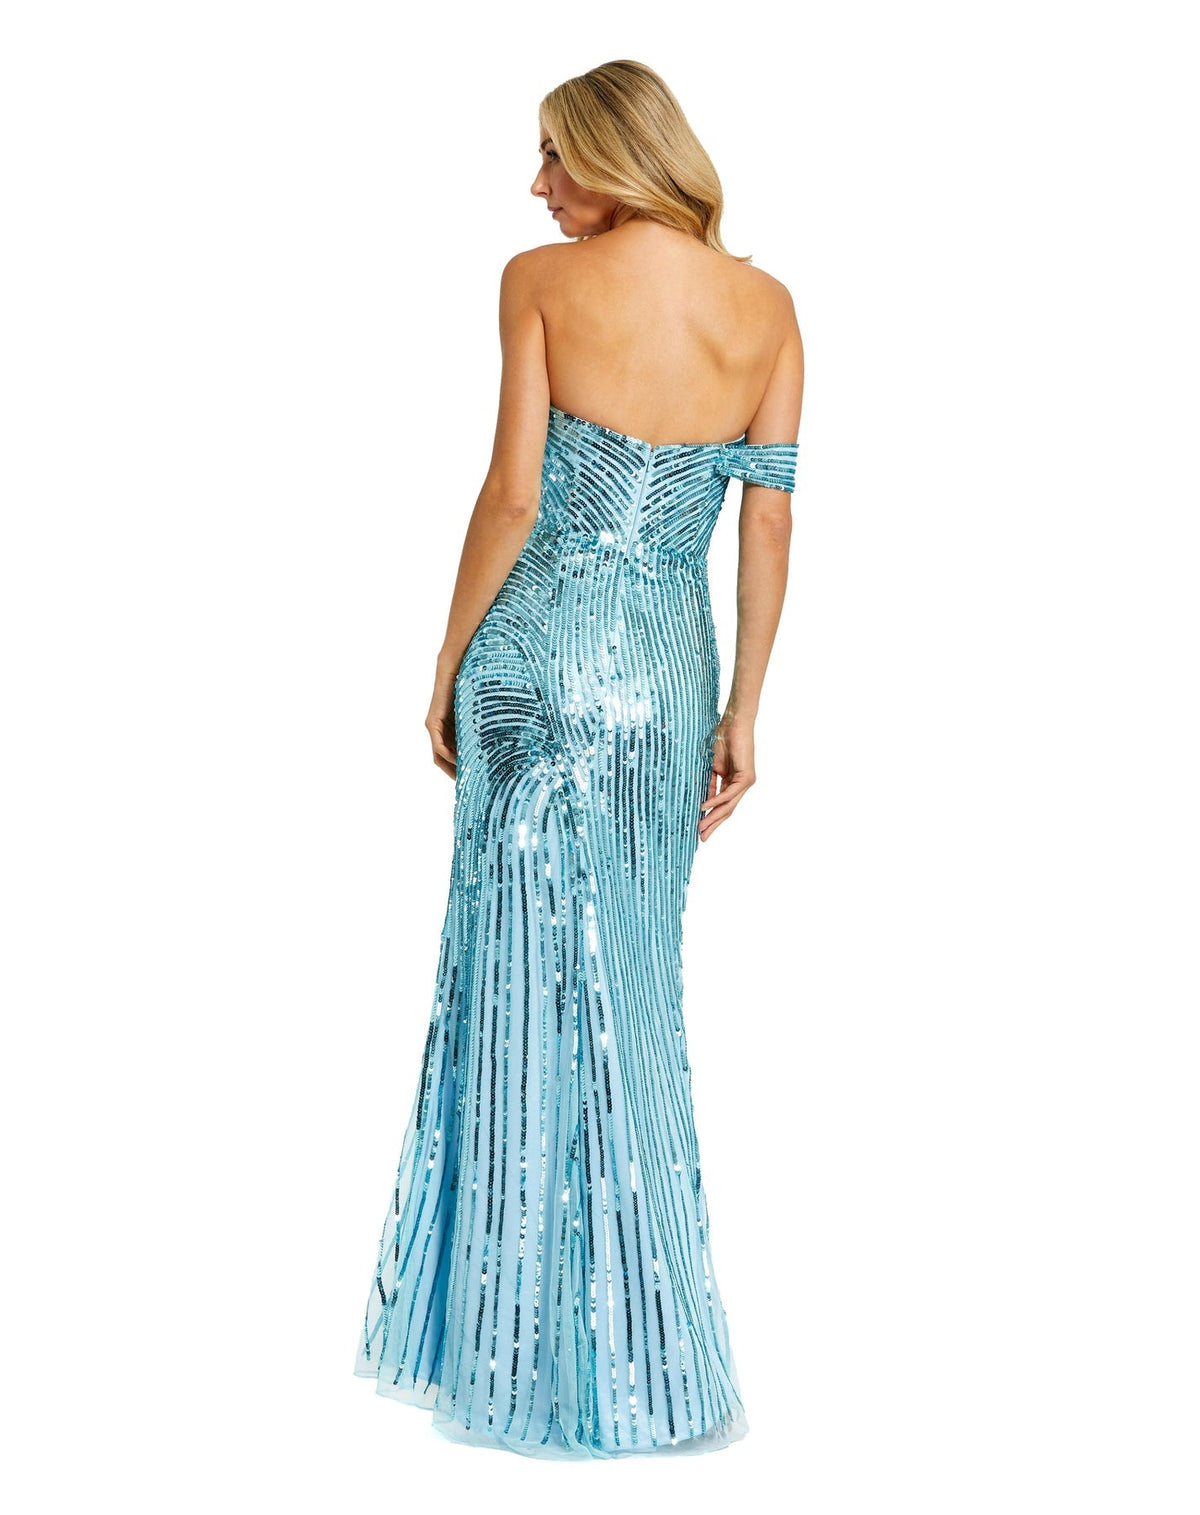 Asymmetric one shoulder mesh sequin gown with split - Aqua Blue